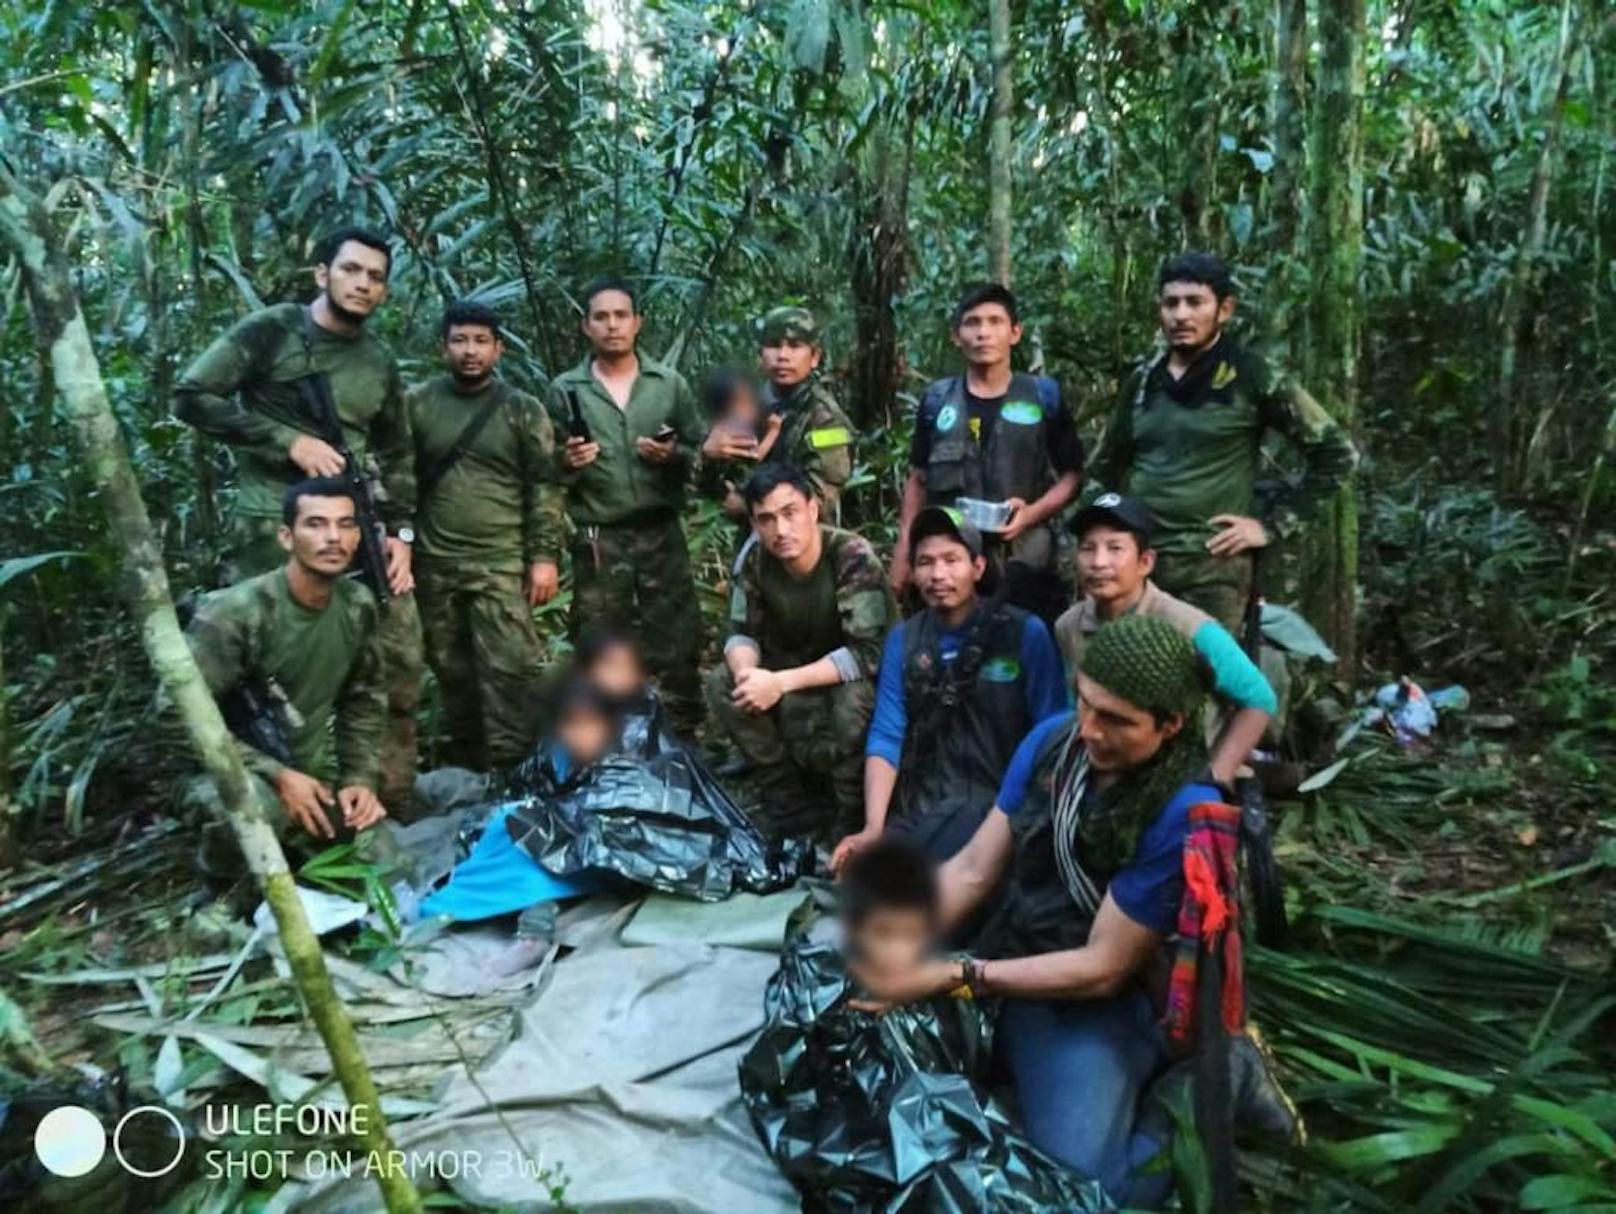 40 Tage im Dschungel – jetzt wird Geschichte verfilmt